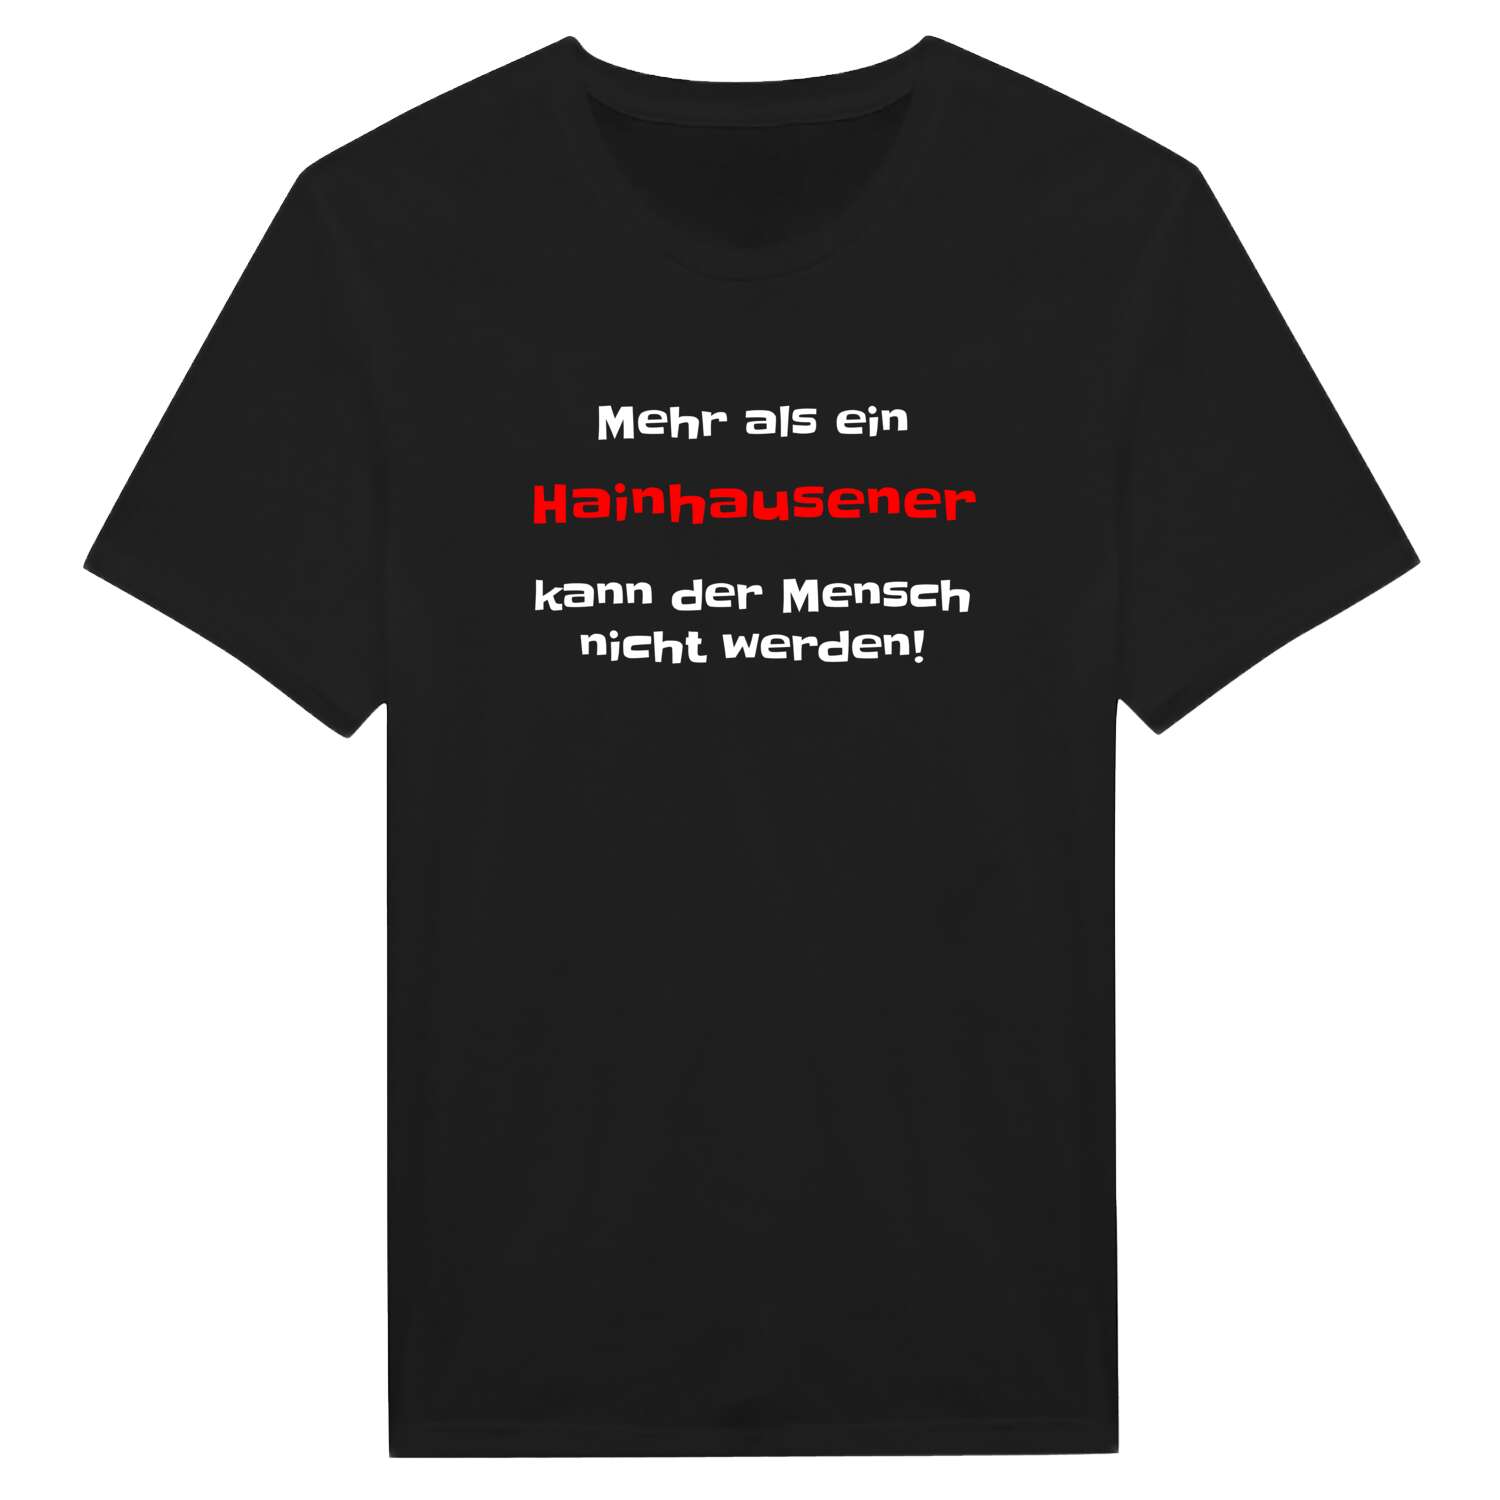 Hainhausen T-Shirt »Mehr als ein«